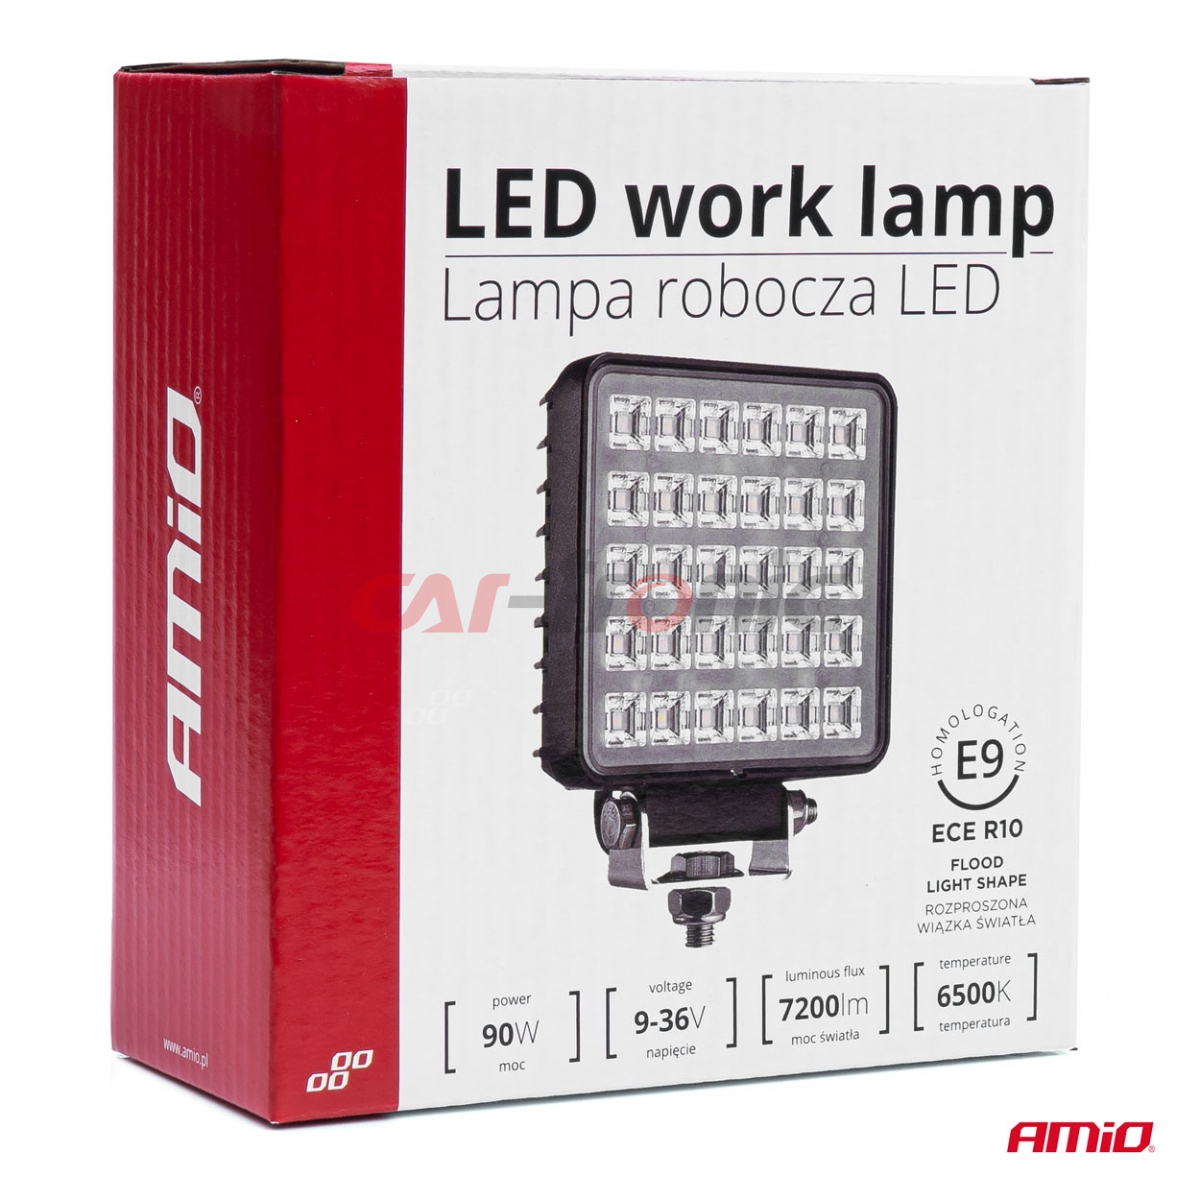 Lampa robocza halogen LED szperacz AWL34 30 LED z włącznikiem AMIO-03245